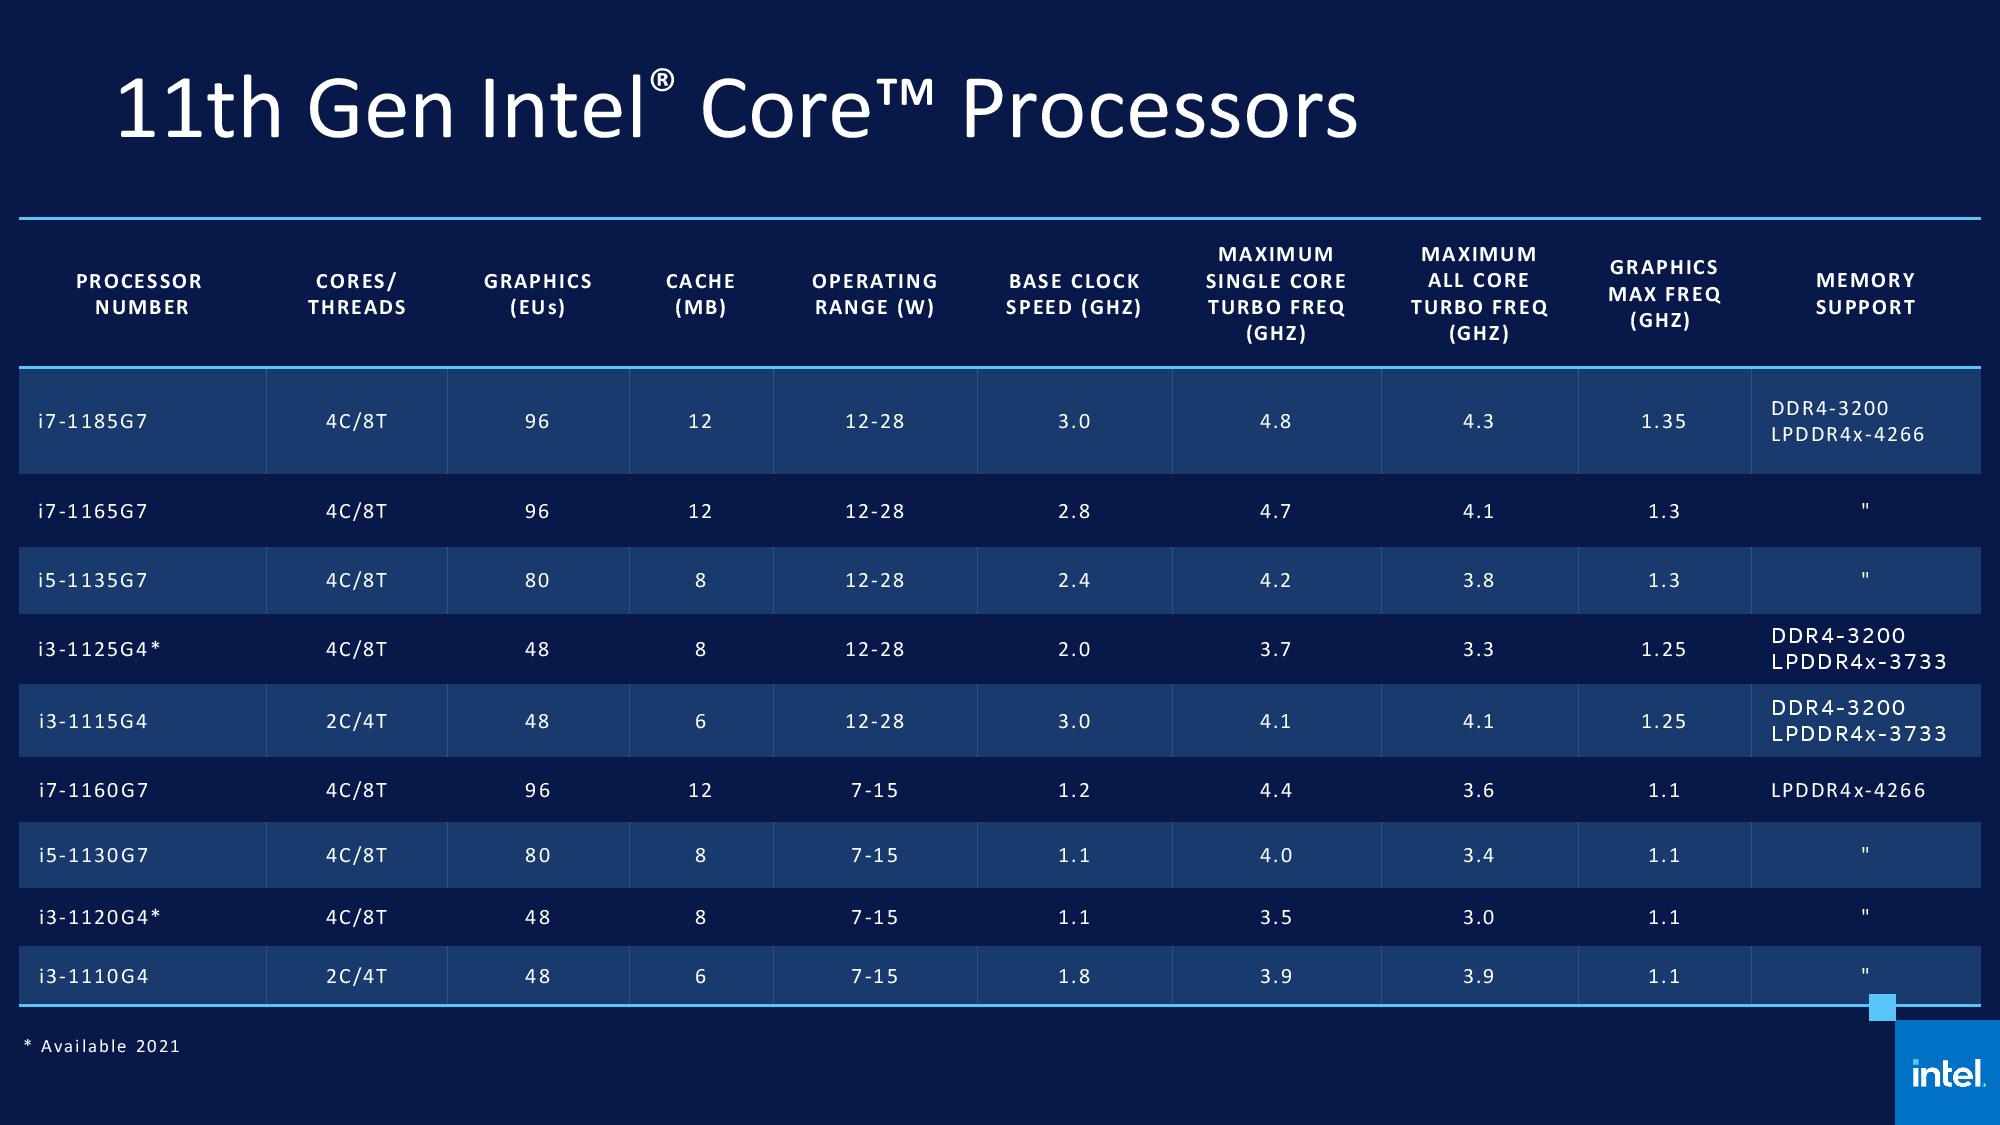 La linea di CPU Intel Core di undicesima generazione per desktop con nome in codice Rocket Lake-S verrà lanciata il prossimo anno con quattro modelli includendo il falgship Intel Core i9-11900K. (FOTO) L'informazione è stata pubblicata su Twitter da Davidbepo e trasformata in un utile grafico da Harukaze5719 che ci dà modo di dare uno sguardo generale alle nuove CPU e alle rispettive specifiche. La gamma di CPU desktop Intel Rocket Lake-S includerà i nuovissimi core Cypress Cove che, come vedremo dai benchamark di cui ti parlerò nella seconda parte di questo articolo, hanno mostrato un potenziale enorme, con specifiche da vera ammiraglia. Tuttavia bando alle ciance e iniziamo a parlare delle specifiche di questi nuovi Intel Core di undicesima generazione che, per comodità sono descritte in dettaglio di seguito. Intel Core di undicesima generazione: Core i9-11900K 8 core e 16 thread Rocket Lake (FOTO) Ad aprire questa lista di Intel Core di undecisma generazione ci pensa l'Intel Core i9-11900K il quale sarà la CPU desktop Rocket Lake di di punta. Il chip presenterà 8 core e 16 thread e ciò si tradurrà in 16 MB di cache L3 (2 MB per core) e 4 MB di cache L2 (512 KB per core). In termini di boost clock, l'Intel Core di undicesima generazione funziona a frequenze di base di 3,5 GHz ma per quanto riguarda il boost, la CPU presenterà un boost clock massimo di 5,2 GHz (1 core) mentre la frequenza di boost all-core verrà mantenuta a 4,8 GHz. Il chip presenterà anche Thermal Velocity Boost che dovrebbe fornire un salto di 100 MHz nella frequenza di clock massima, ciò dovrebbe portare a un boost clock single-core di 5,3 GHz, rendendola la prima CPU a raggiungere una frequenza così alta fuori dagli schemi. Tuttavia, ricorda che indipendentemente dall'utilizzo dei core Cypress Cove, l'Intel Core i9-11900K presenterà core e thread inferiori rispetto all'Intel Core i9-10900K, ciò è in parte dovuto al backporting di Cypress Cove sul raffinato nodo di processo a 14 nm. (FOTO) Si dice che la CPU presenti un limite di potenza del 1° stadio di 125 W che è standard per una SKU Intel di punta, mentre invece il limite di potenza del 2° stadio o PL2 è valutato a 250 W. Ciò significa che quando raggiunge la velocità di clock massima pubblicizzata, la CPU potrebbe effettivamente prelevare la suddetta quantità di watt dall'alimentatore rendendolo uno dei chip a 8 core più assetati di energia mai prodotti. Questo potrebbe anche spiegare perché Intel non ha scelto 10 core e 20 thread sulla sua linea Intel Core di undicesima generazione poiché si sarebbe rivelato essere un mostro assetato di potenza di un chip che supera anche il limite di potenza di 250 W. Intel Core di undicesima generazione: Core i7-11700K 8 core e 16 thread Rocket Lake (FOTO) Al secondo posto di questa lista di Intel Core di undicesima generazione c'è il Core i7, e possiamo notare che Intel non segmenterà il conteggio core/thread su un livello inferiore al Core i9. Il Core i7-11700K presenta la stessa configurazione di core dell'Intel Core i9-11900K ma viene fornito con velocità di clock ridotte. Si dice che il chip presenti un boost clock di 5,0 GHz su un singolo e 4,6 GHz su tutti i suoi 8 core. La CPU trasporterà anche la stessa quantità di cache, quindi non è cambiato nulla, ma la differenza principale dovrebbe derivare dai clock e dai limiti di potenza. Questo chip con cestello inferiore avrà un limite di circa 225-250 W in PL2 (Power Limit 2) mentre il limite PL1 sarà standard a 125 W. Sarà interessante vedere come le CPU Rocket Lake overcloccano poiché la minima differenza tra i chip Core i9 e Core i7 può essere superata da un piccolo overclock; per quanto riguarda i prezzi, il Core i7 sarà anche più economico della variante Core i9, ma non sappiamo ancora come Intel determinerà il prezzo delle sue CPU desktop Rocket Lake-S a 8 core. (FOTO) Ci sono rumors secondo i quali Intel potrebbe valutare in modo aggressivo questa serie di Intel Core di undicesima generazione, piazzandoli a circa $ 400 US per il Core i9 e $ 300 US per il Core i7, il che potrebbe rivelarsi un'ottima decisione se vogliono davvero andare contro le parti basate sullo Zen 3 di AMD nel sotto i $ 500 Segmento USA. Intel Core di undicesima generazione: Core i5-11600K 6 core e 12 thread Rocket Lake (FOTO) Il Core i5-11600K è un chip a 6 core con 12 thread. Il Core i5-11600K dovrebbe andare contro l'AMD Ryzen 5 5600X che è una CPU fenomenale a sé stante. Si dice che il Core i5-11600K abbia una velocità di clock di 4,9 GHz su un singolo e 4,6 GHz su tutti i core. Si noti che il Thermal Velocity Boost non sarà disponibile sugli SKU inferiori ai modelli Core i9, quindi non dovremmo aspettarci un limite di frequenza esteso sugli SKU Core i7 e Core i5, mentre per quanto riguarda le cache, il chip conterrà 12 MB di cache L3 e 3 MB di cache L2. Ora il principale terreno di prova per questo chip contro l'AMD Ryzen 5 5600X sarà la sua prestazione in rapporto al prezzo visto che il Ryzen 5 5600X con un prezzo consigliato di $ 299 negli Stati Uniti è leggermente più alto in termini di prezzo se confrontato con il suo predecessore. Il Core i5-11600K invece sostituirà il Core i5-10600K che ha un prezzo al dettaglio di circa $ 260 US e, se Intel si attiene alla sua strategia di prezzo, il Core i5-11600K potrebbe effettivamente diventare un chip di vendita caldo nel mercato dei giochi mainstream. (FOTO) Detto questo, dobbiamo anche tenere conto della disponibilità del Core i5-11600K in quanto, tecnicamente, le SKU tradizionali non sono influenzate molto dai problemi di fornitura come nel caso del Ryzen 5 5600X, ma un piccolo ritardo nelle scorte potrebbe far perdere a Intel l'opportunità di creare un'ammaccatura nel segmento Ryzen 5 di AMD. I consumatori hanno già visto ciò che AMD ha fornito come successore del suo Ryzen 5 3600X, quindi ora è il momento di vedere cosa può fare il successore del Core i5-10600K. Intel Core di undicesima generazione: Core i5-11400 6 core e 12 thread Rocket Lake Infine, in questa lista dei nuovi Intel Core di undicesima generazione, abbiamo il Core i5-11400 che è una CPU desktop Rocket Lake di 11a generazione bloccata e non K. (FOTO) Intel difficilmente prende la strada dei chip bloccati, anzi, è un qualcosa che fa raramente in quanto, come in questo caso, ciò divorerà le vendite delle sue SKU della serie K; il Core i5-11400 tra l'altro, in quanto tale, sarà un chip a 6 core e 12 thread con una configurazione del core simile al Core i5-11600K ma velocità di clock inferiori di 4,4 GHz (boost di 1 core) e 4,2 GHz (boost di tutti i core). Il chip presenterà un limite di potenza standard da 65 W in PL1 e 125 W in PL2. Sebbene la CPU tecnicamente non supporti l'overclock, i fornitori di schede madri incorporeranno BIOS e funzionalità per aumentare i limiti di potenza delle SKU non K per i chip Rocket Lake, ciò dovrebbe produrre una base più alta e frequenze di boost più stabili quindi, nel complesso, otterrai prestazioni simili alle SKU della serie K a un prezzo inferiore. Ecco tutto ciò che sappiamo sulle CPU desktop Intel Core di undicesima generazione La piattaforma CPU desktop Intel Rocket Lake-S dovrebbe supportare il socket LGA 1200 che farà il suo debutto con le CPU Comet Lake-S anche se su schede madri della serie 400. (FOTO) I processori Intel Core di undicesima generazione verranno lanciati insieme alle schede madri della serie 500, ma da allora è stato confermato che le schede madri LGA 1200 offriranno il supporto per le CPU Rocket Lake-S, soprattutto considerando il fatto che PCIe Gen 4.0 è una caratteristica importante di Z490 schede madri che sarebbero abilitate solo con l'uso di CPU desktop Rocket Lake-S. Tra le "main feature" di questi nuovi Intel Core di undicesima generazione abbiamo: Prestazioni migliorate con la nuova architettura core Cypress Cove Fino a 8 core e 16 thread (guadagni IPC a doppia cifra su Skylake) Nuova architettura grafica Xe (prestazioni fino al 50% in più rispetto a Gen9) Maggiore supporto di memoria DDR4 3200 MHz Corsie CPU PCIe 4.0 (disponibile sulle schede madri Z490 e Z590) Display avanzato (HDMI 2.0b integrato, DP1.4a, HBR3) Corsie PCIe CPU x4 aggiunte = 20 corsie PCIe 4.0 CPU totali Enhanced Media (12 bit AV1 / HVEC, compressione E2E) Memoria collegata alla CPU o memoria Intel Optane Nuove caratteristiche e capacità di overclock Offload audio USB CNVi e Wireless-AX integrati USB 3.2 Gen 2x2 integrato (20G) LAN discreta Ethernet da 2,5 Gb Intel Thunderbolt 4 discreto(compatibile USB4) Si dice che l'architettura per le CPU Intel Core di decima generazione sia Cypress Cove, che secondo quanto riferito è un ibrido tra il design di Sunny Cove e Willow Cove, ma presenterà l'architettura della GPU Xe Gen 12. Ai colleghi di wccftech è stato anche detto che la serie di schede madri Z590 con supporto Thunderbolt 4.0 sarà annunciata entro la fine dell'anno, quindi aspettatevi maggiori informazioni sulle CPU Rocket Lake nei prossimi mesi. I benchmark dell'Intel Core di undicesima generazione All'inizio di questo mese, l'Intel Core di undicesima generazione di punta, ovvero il Core i9-11900K, è apparso nel database di benchmark Ashes of the Singularity abbinato a una GPU GeForce RTX 3080. Ora, il processore è stato confrontato con una GeForce RTX 2080 Ti, consentendo di fare ulteriori confronti tra esso e altri processori desktop recenti. https://twitter.com/TUM_APISAK/status/1334669804330860544 Secondo le new entry, il Core i9-11900K ottiene circa 6.075 punti con una GeForce RTX 2080 Ti e 32 GB di RAM. Il processore ha anche raggiunto un framerate di 61,9 FPS sul preset Crazy_1080p che esegue il preset DirectX 12, al contrario, un sistema Core i9-10900K simile ha ottenuto 5.700 punti, anche se ha due core in più rispetto al Core-11900K. Come ti dicevo sopra, sulla base delle informazioni passate, il flagship degli Intel Core di undicesima generazione, aveva già fatto trapelare le sue specifiche, inoltre avrà avrà 4 MB di cache L3 in meno rispetto al suo predecessore Comet Lake-S. Tuttavia, il Core i9-11900K è comunque riuscito a superare il Ryzen 9 5950X con un buon margine e, come mostra lo screenshot qui sopra, il Ryzen 9 5950X perde quasi 500 punti e 5 FPS nello stesso preset, sebbene abbia lo svantaggio di 16 GB di RAM, anziché 32 GB. I due processori sono stati confrontati sulla stessa API e con la stessa GPU, come riferimento, i core aggiuntivi del Ryzen 9 5950X lo aiuteranno a superare il Core i9-11900K nella maggior parte dei benchmark, come abbiamo già visto su Geekbench.